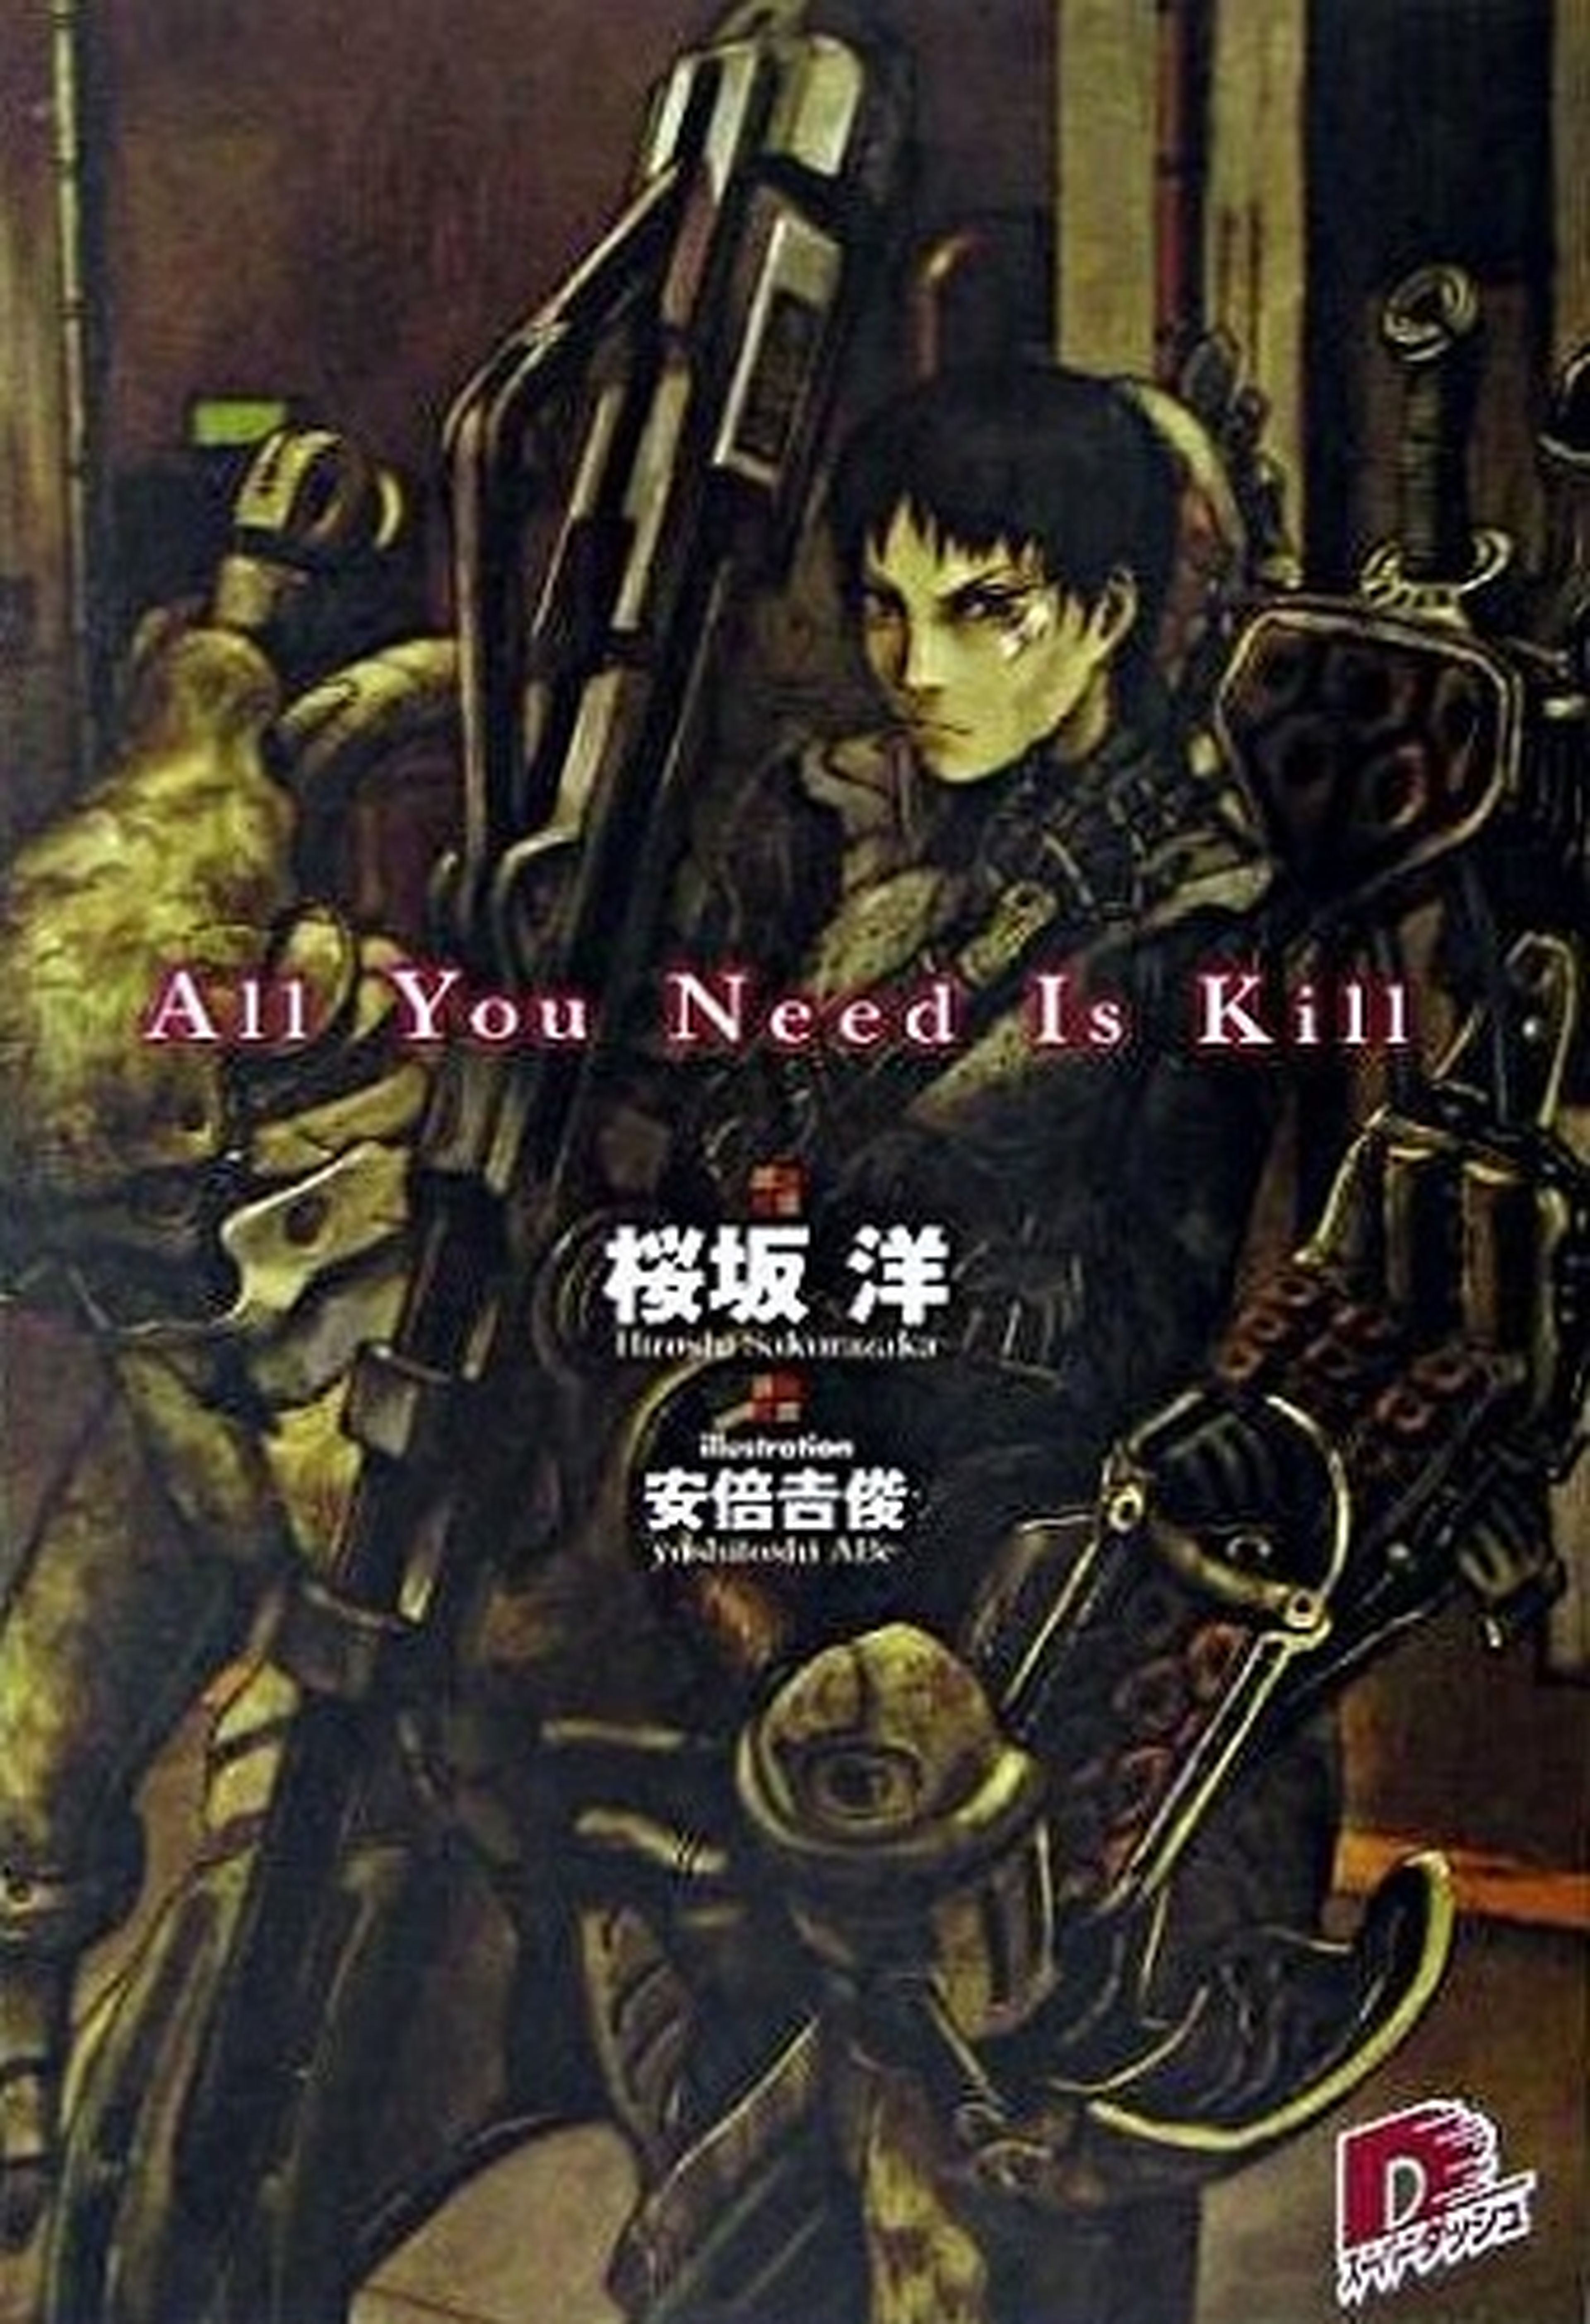 La novela All You Need is Kill se editará en España